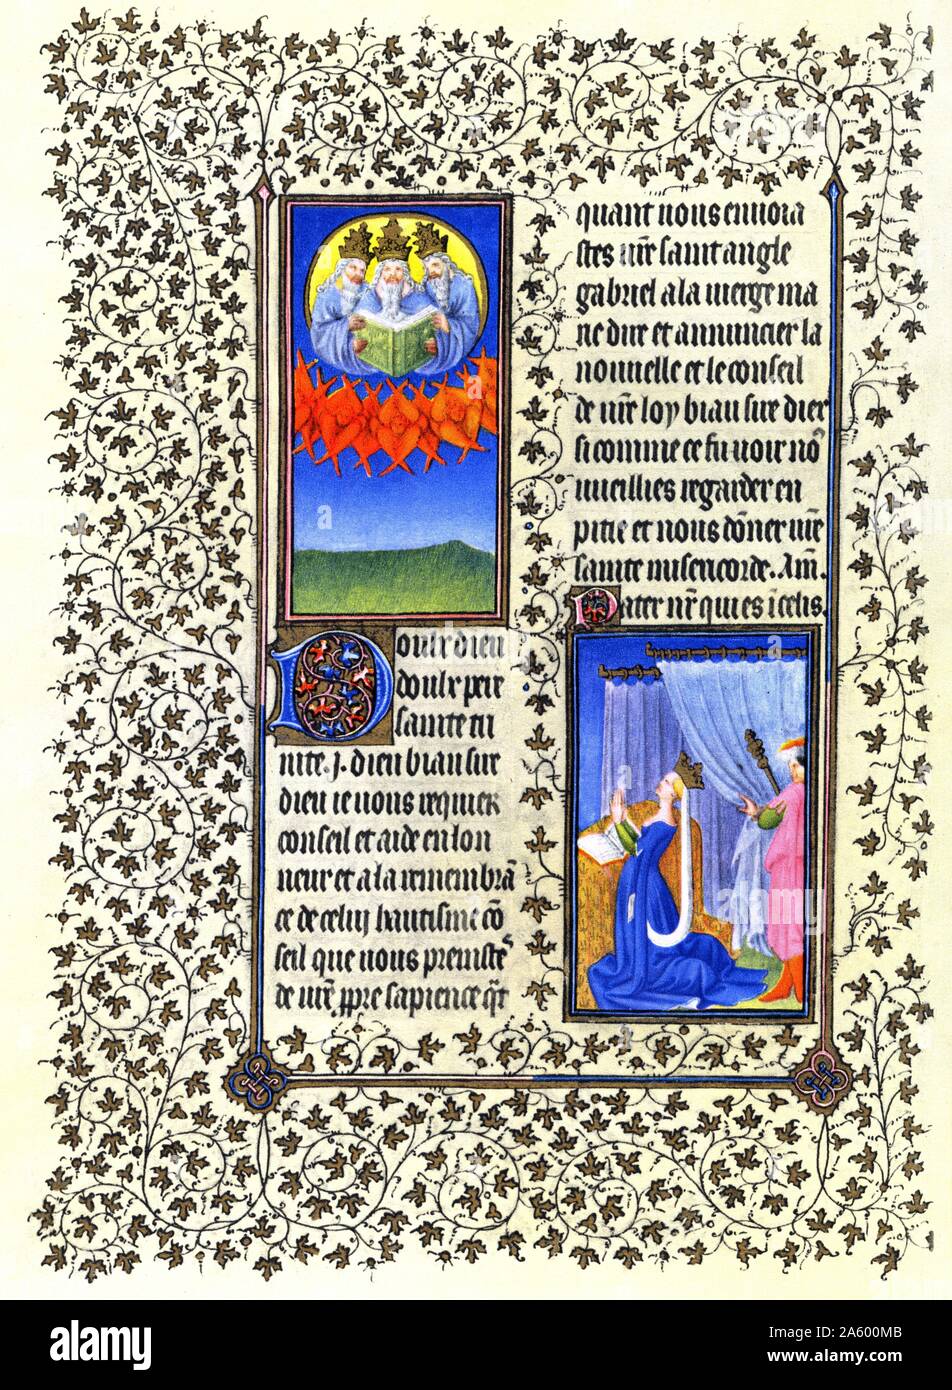 Beleuchtung von Belles Heures von Jean de France, Duc de Berry (schöne Stunden) eine frühe 15. Jahrhundert beleuchtet Manuskript-Buch von Stunden. Vom 15. Jahrhundert Stockfoto